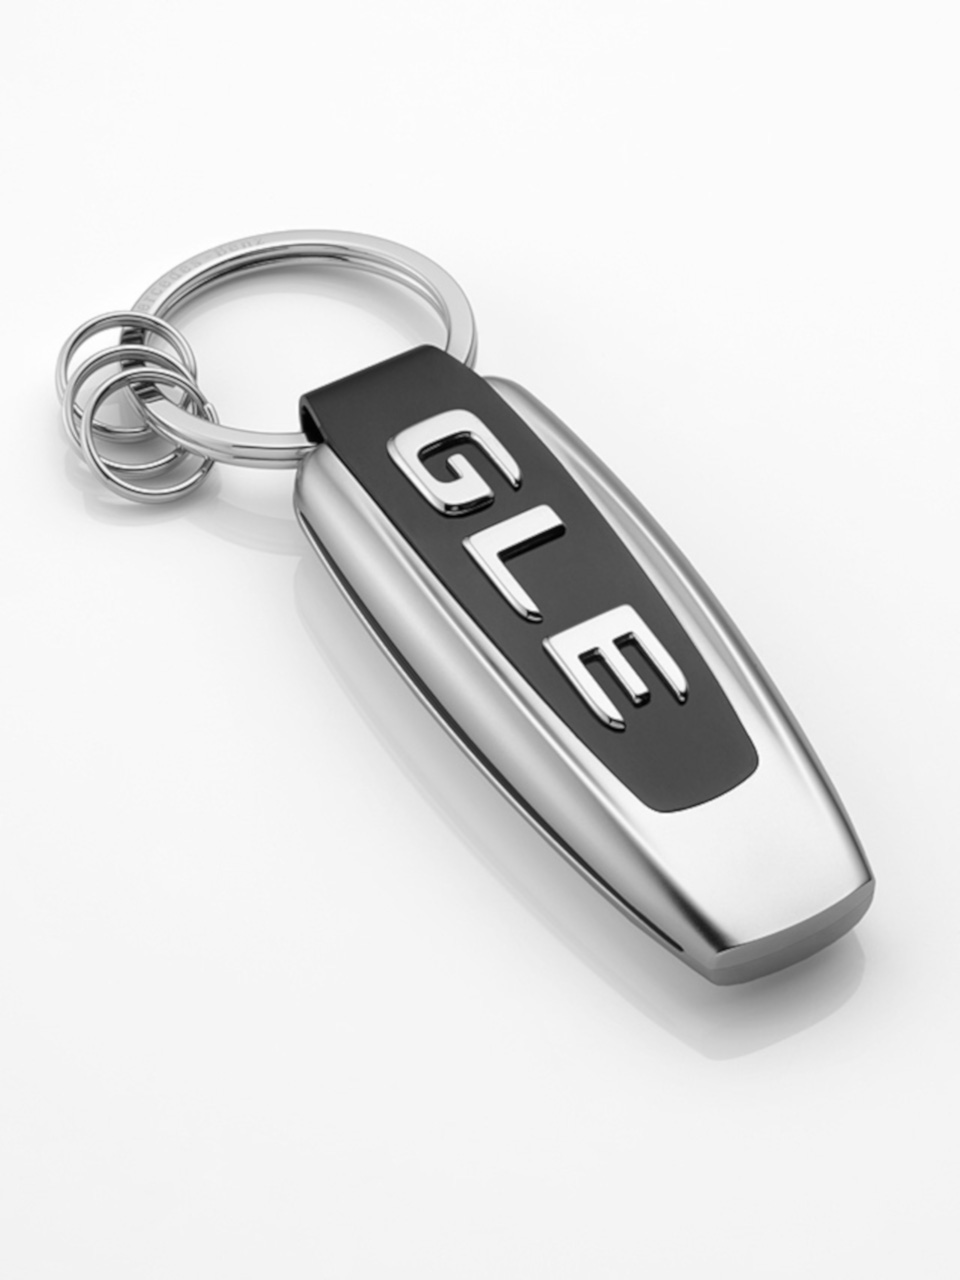 Mercedes Benz bezogene Schlüsselanhänger C300 GLE E300 Guss 